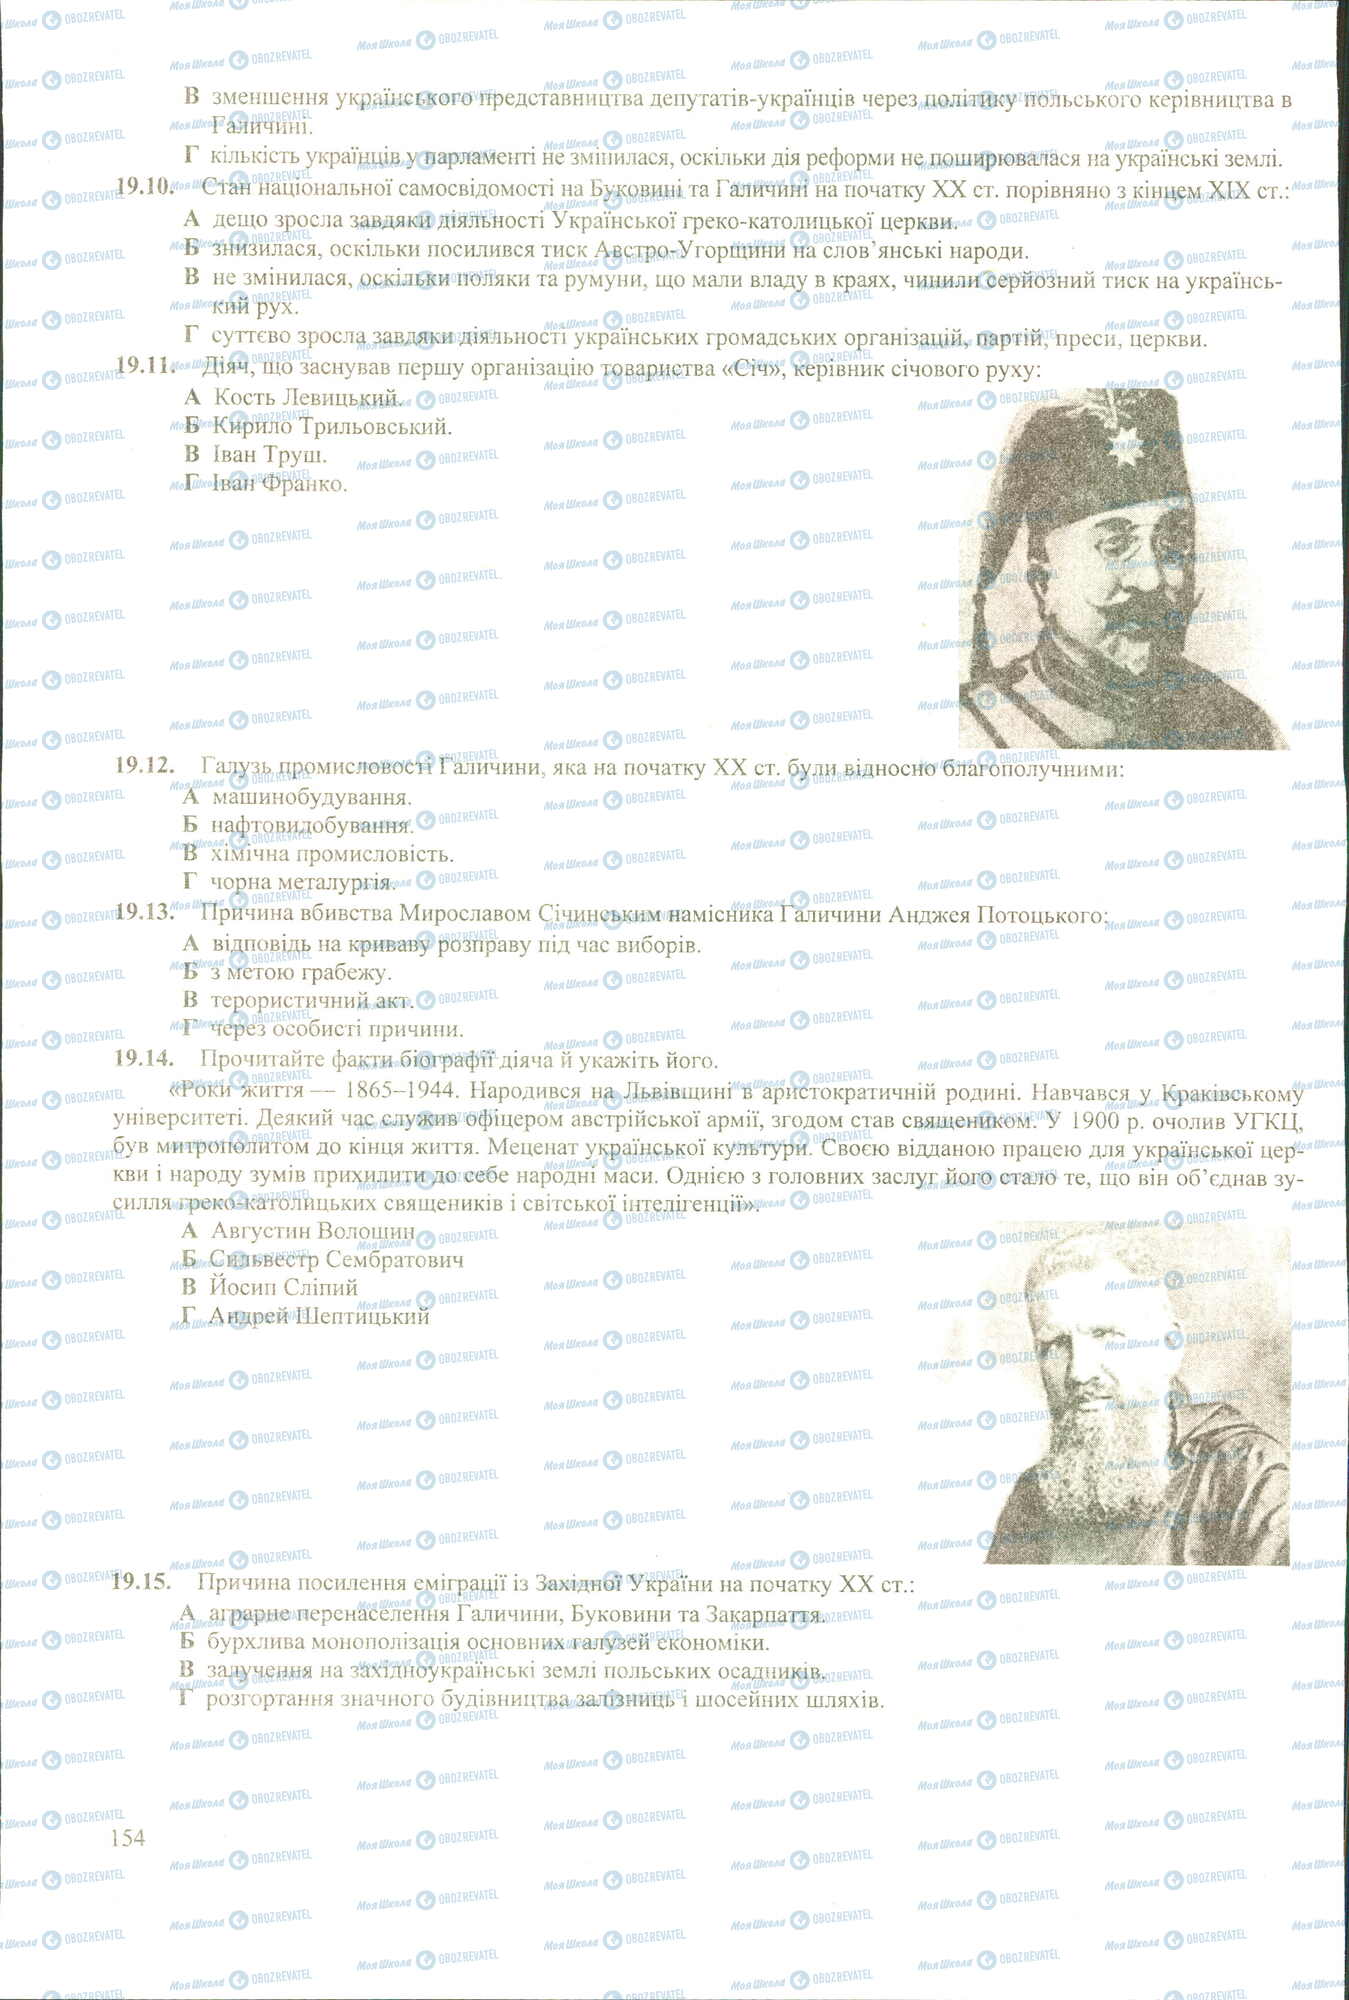 ЗНО История Украины 11 класс страница 10-15